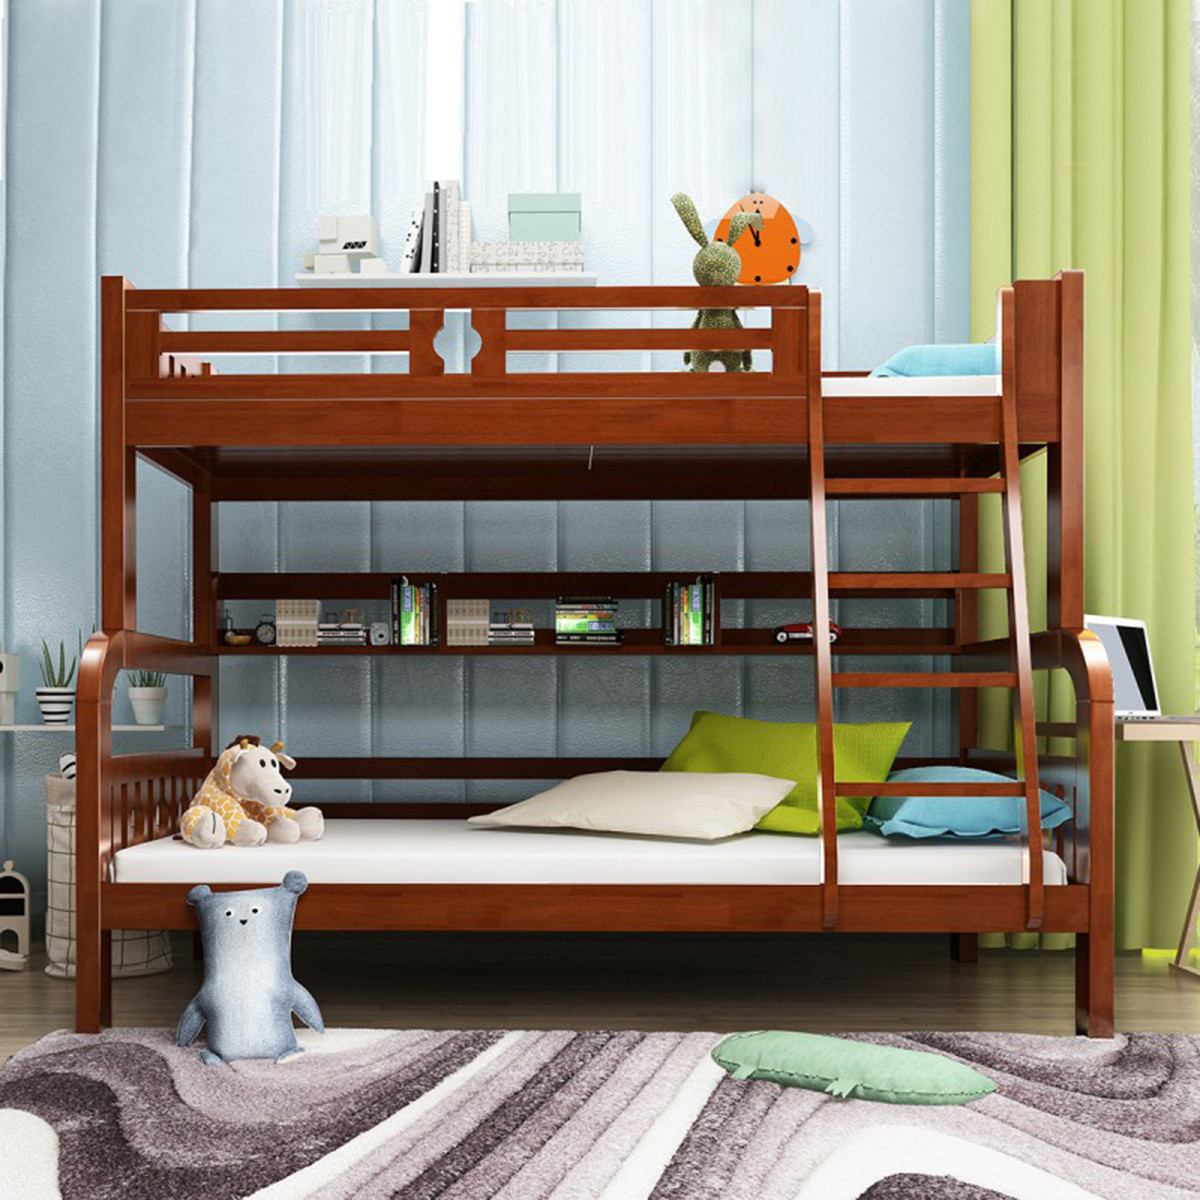 新款双层床抽屉床双层儿童双架床两层床纯实木上下铺家用高底铺床